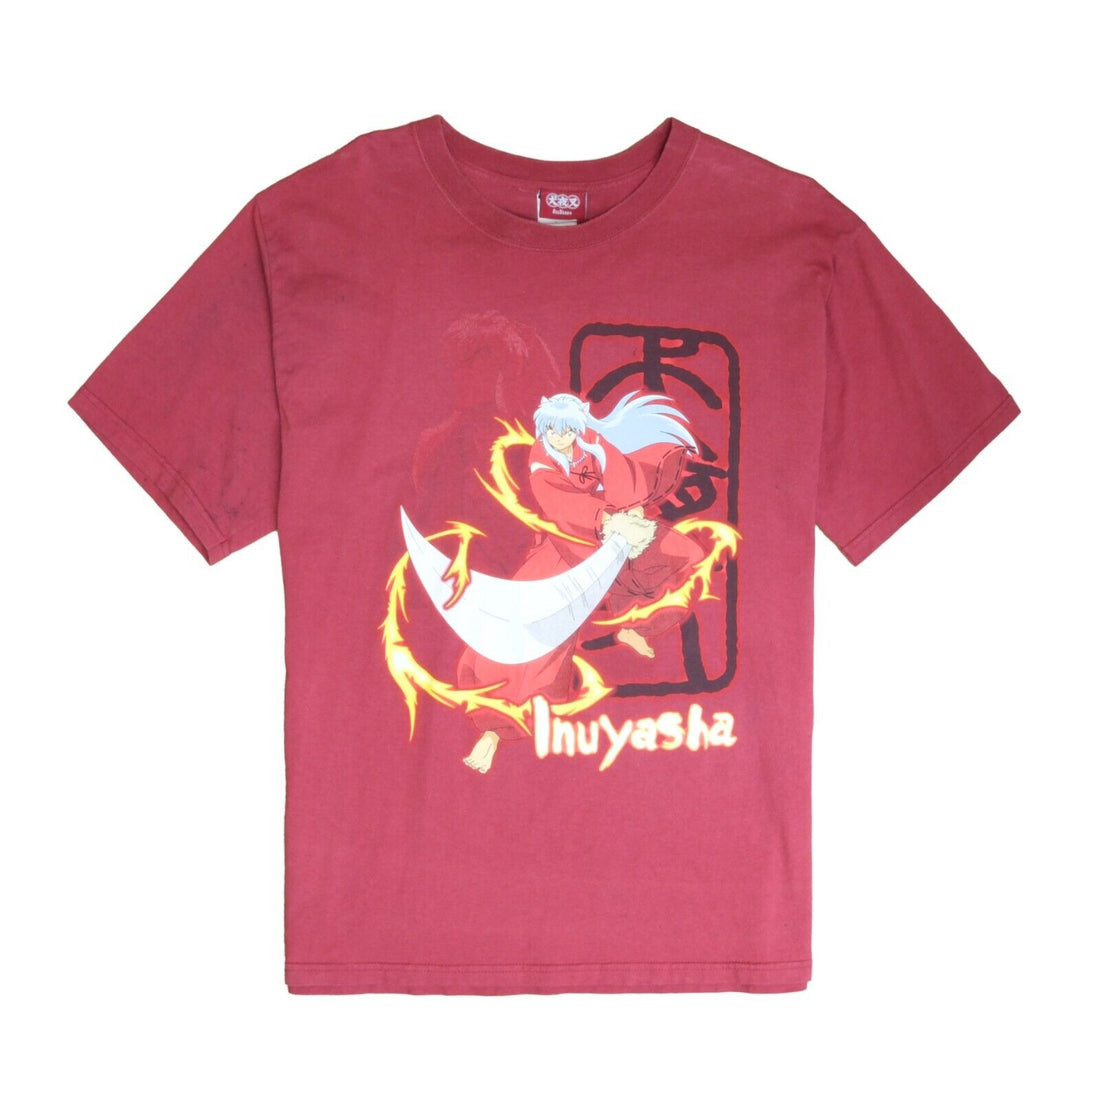 Vintage Inuyasha T-Shirt Size Large Red Anime Manga 2003